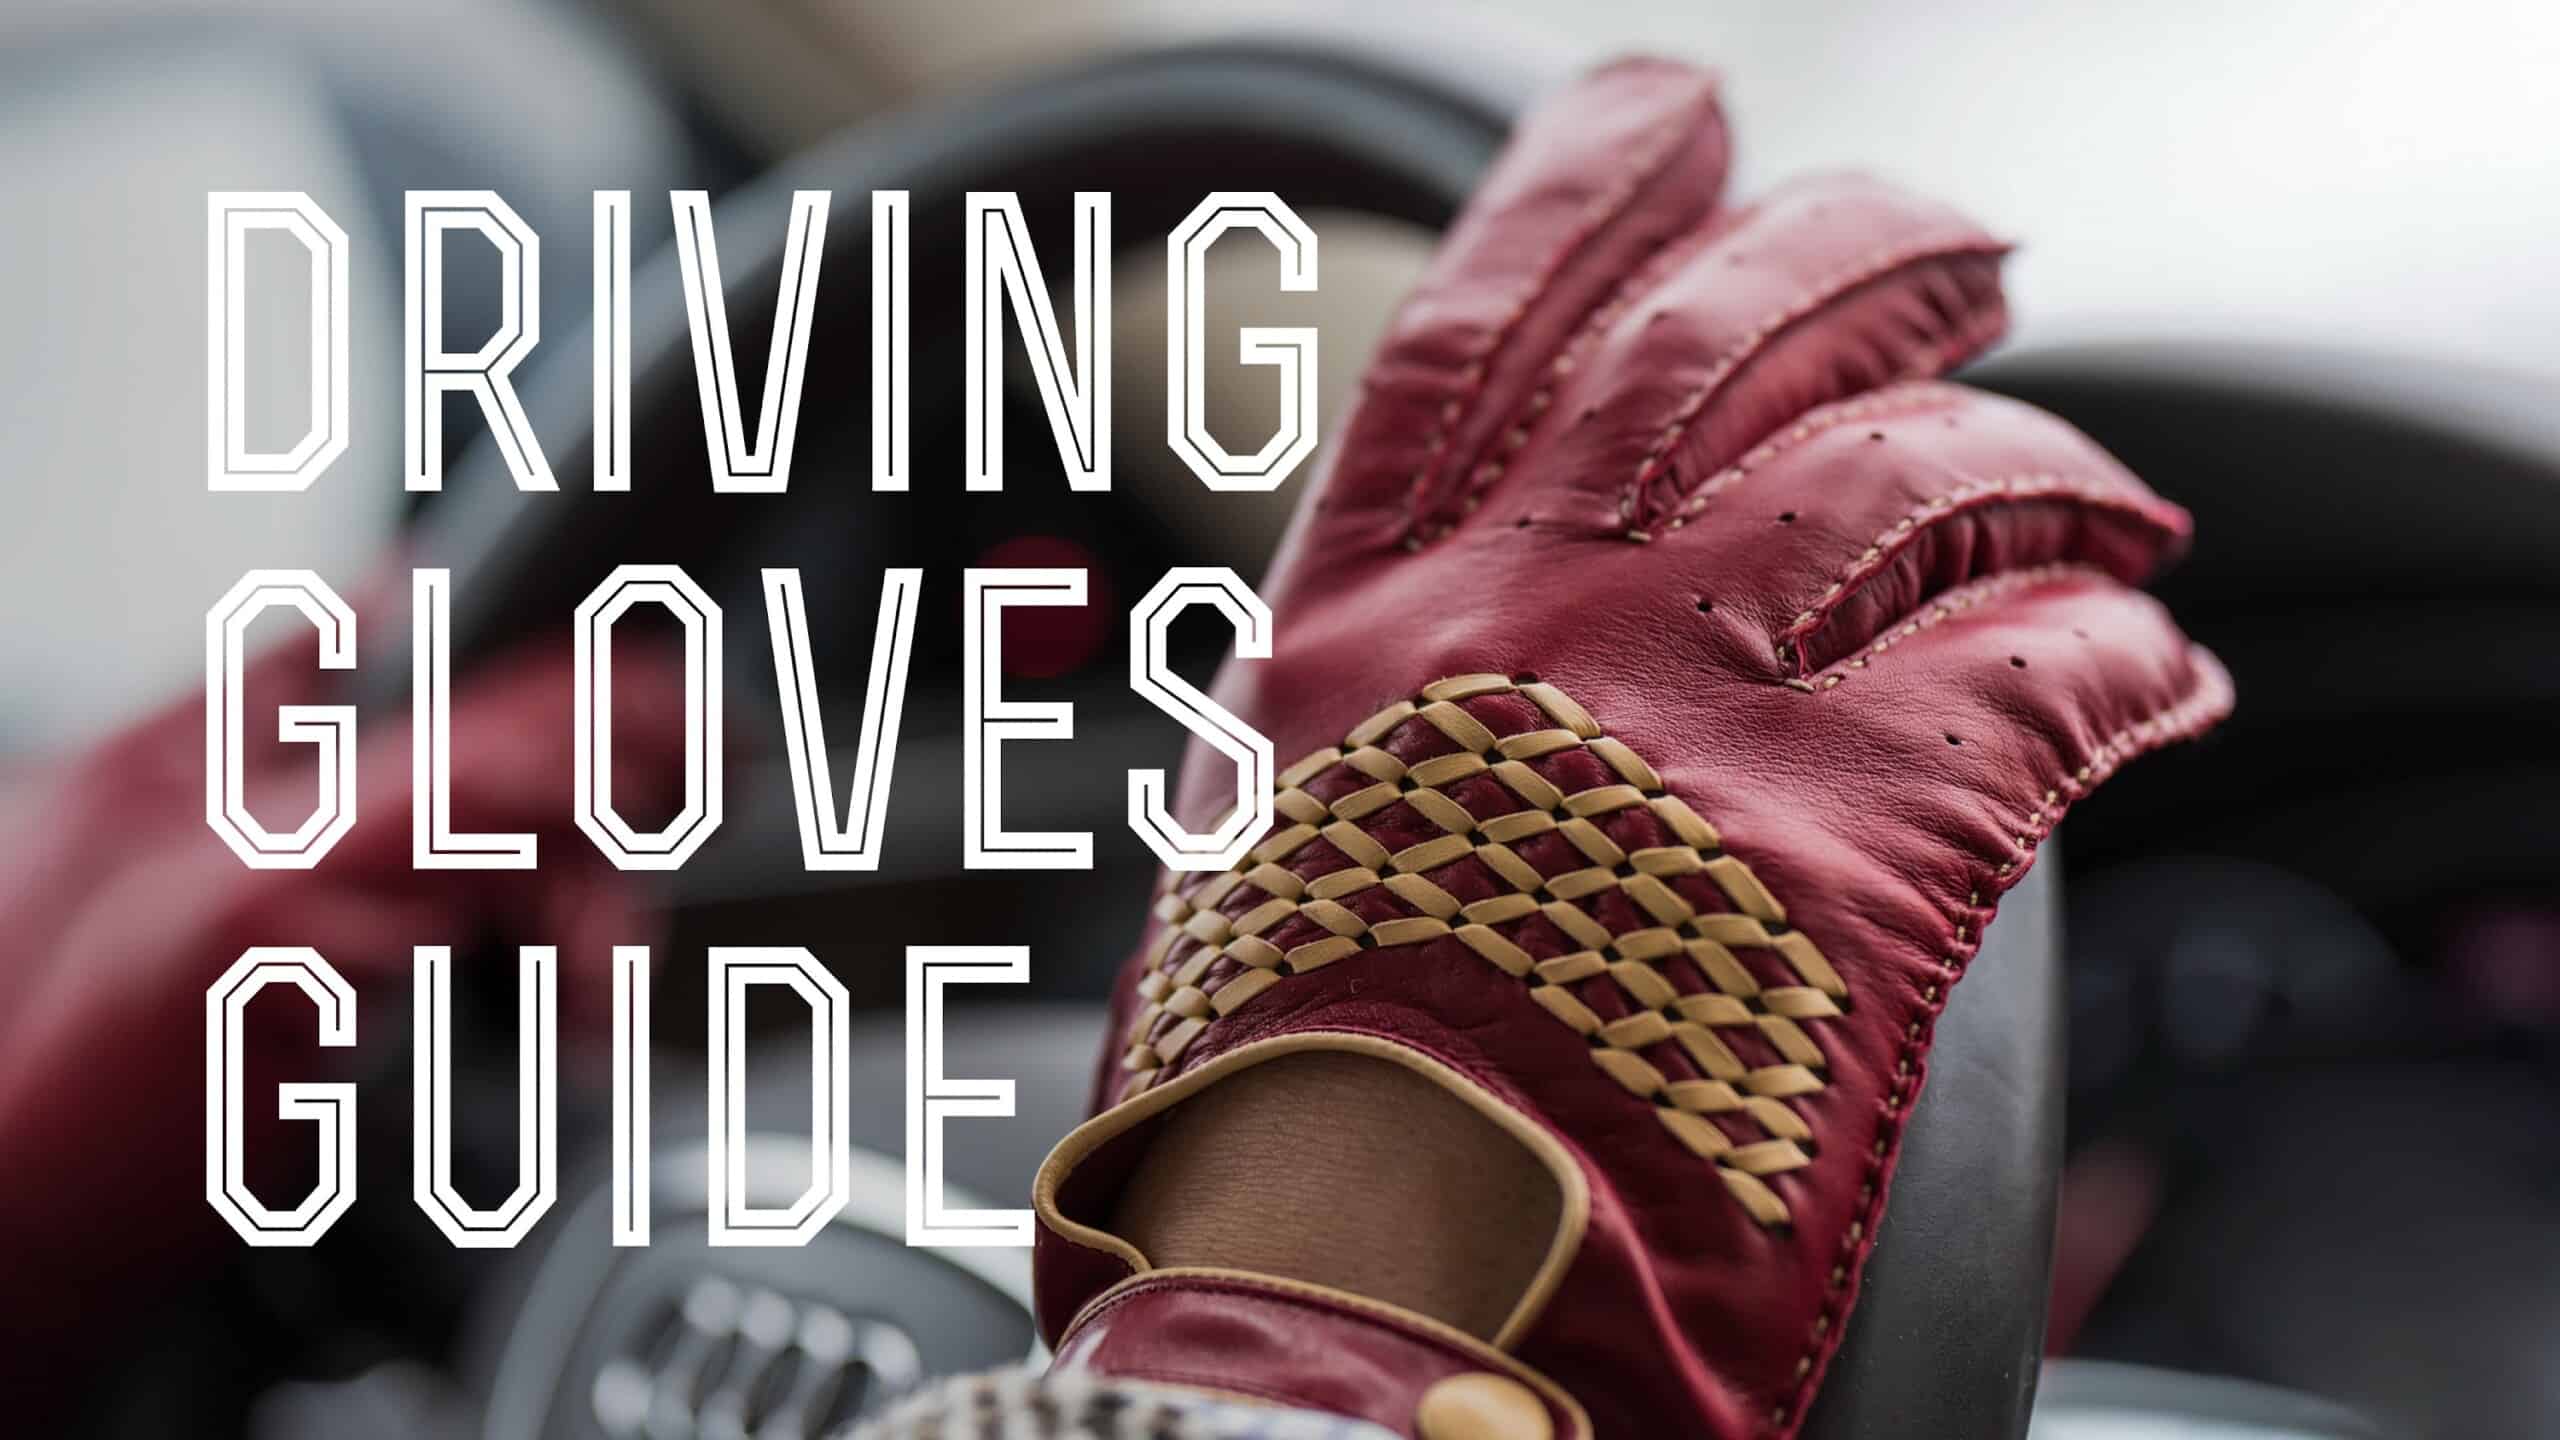 Fingerless Driving Gloves Men Brown - Deerskin - Handmade in Italy